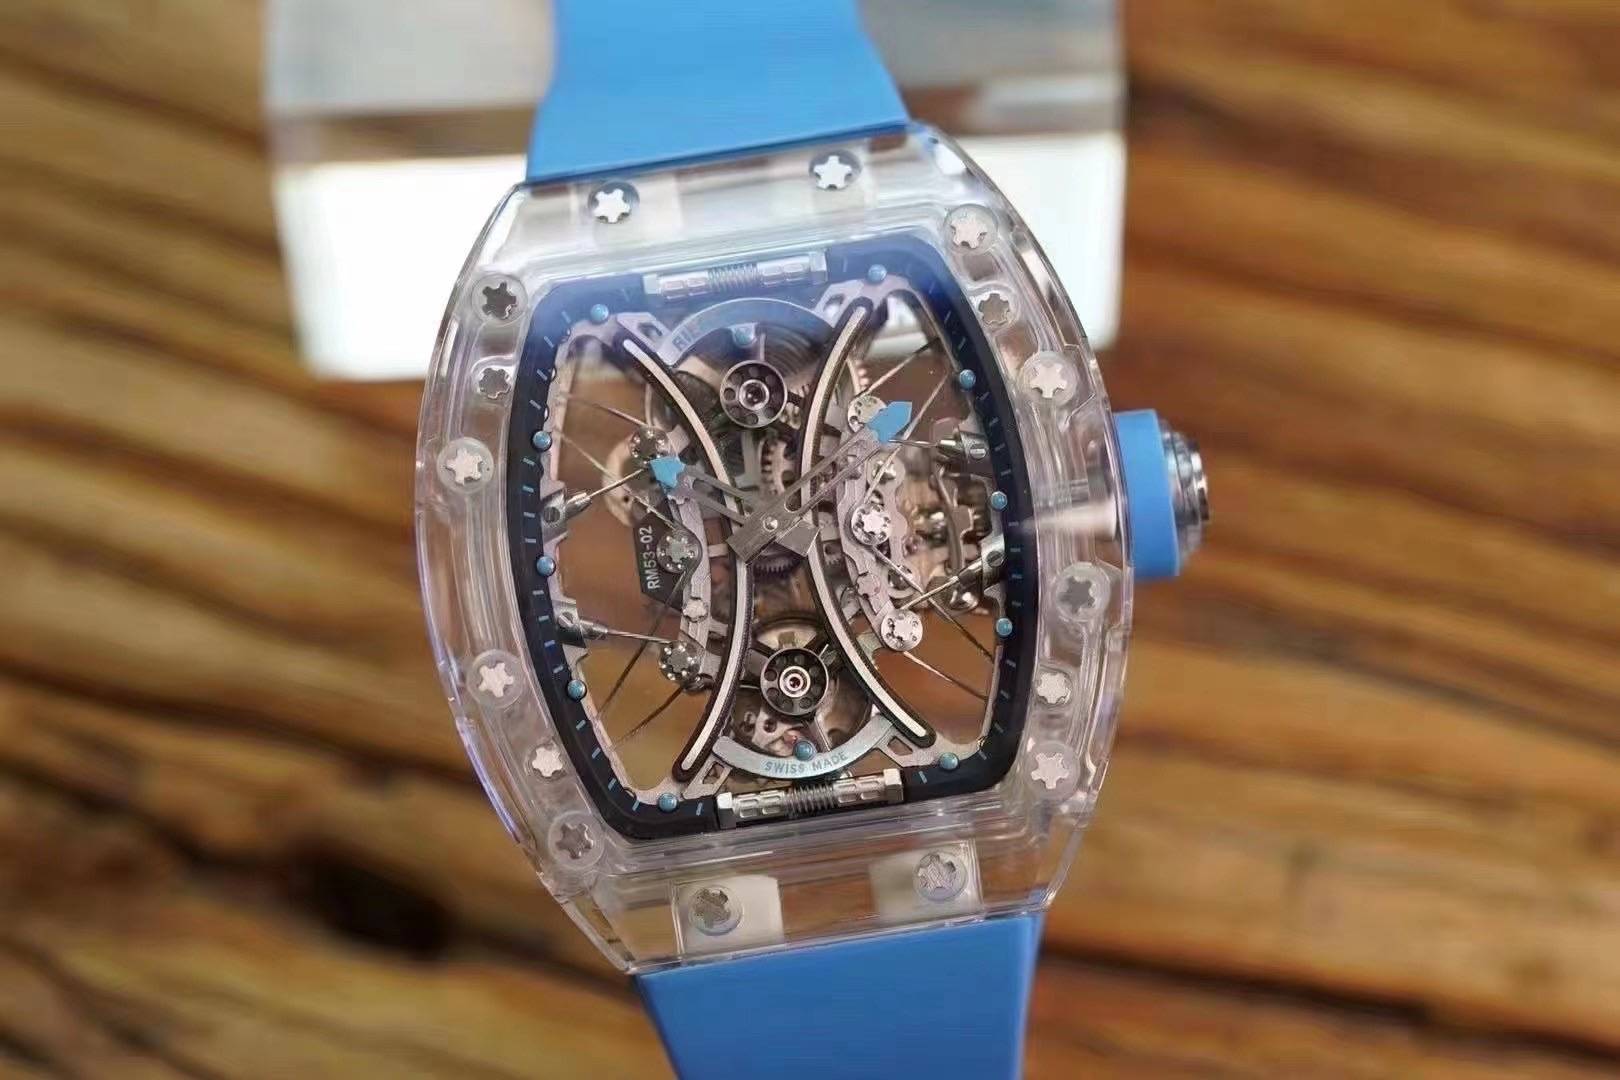 朗哲钟艺理查德rm5302蓝水晶腕表价值千万的马球限量款